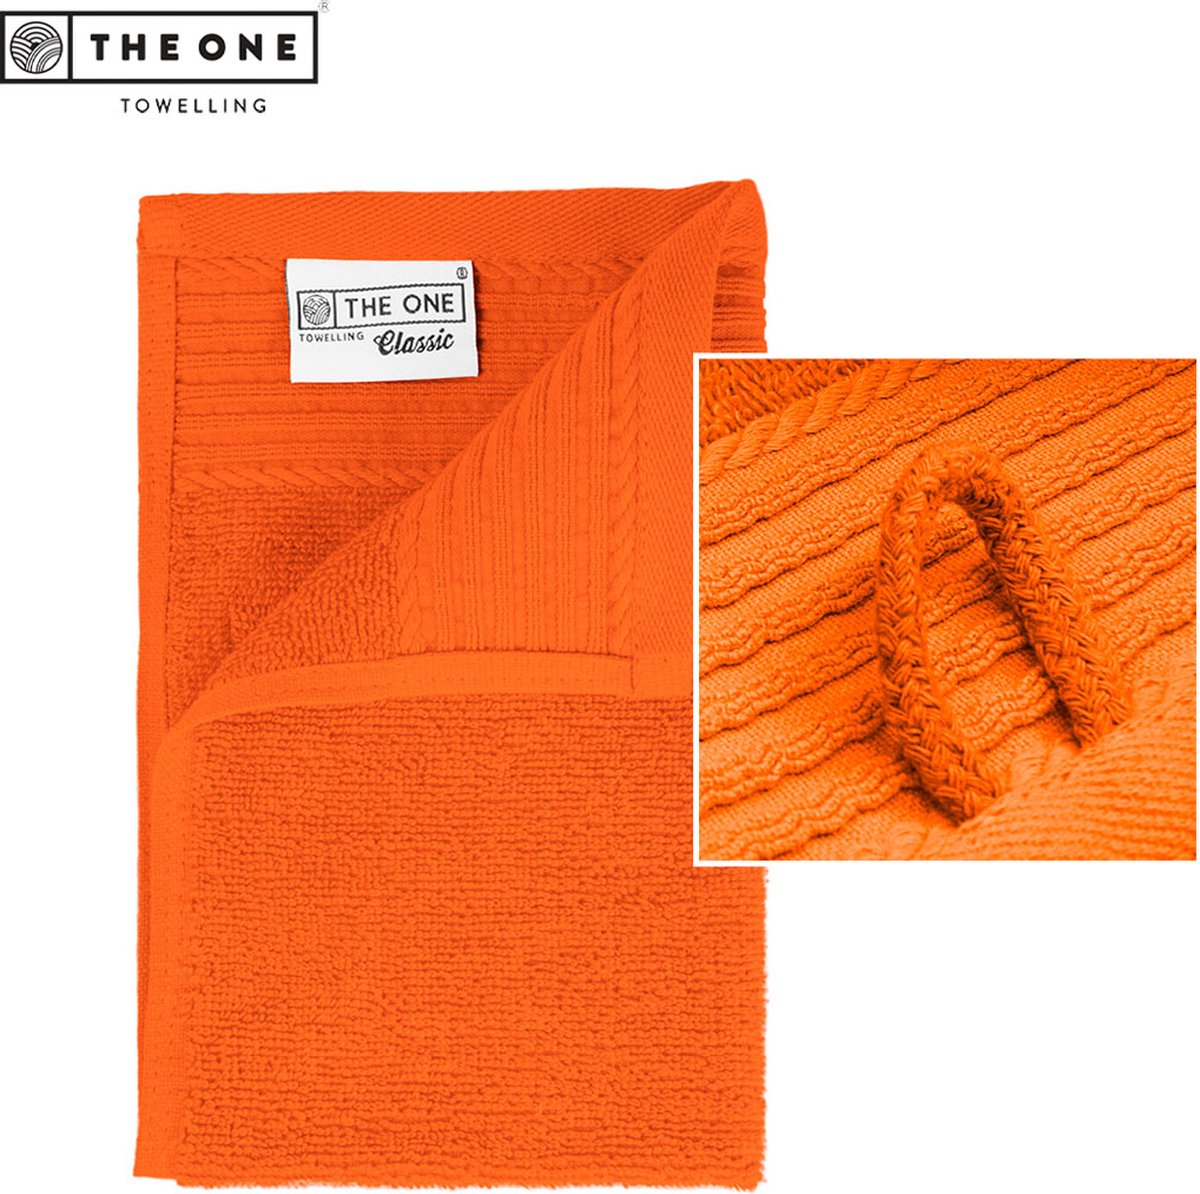 The One Towelling Classic Gastendoek - Kleine handdoek - Hoge vochtopname - 100% Gekamd katoen - 30 x 50 cm- Oranje - The One towelling